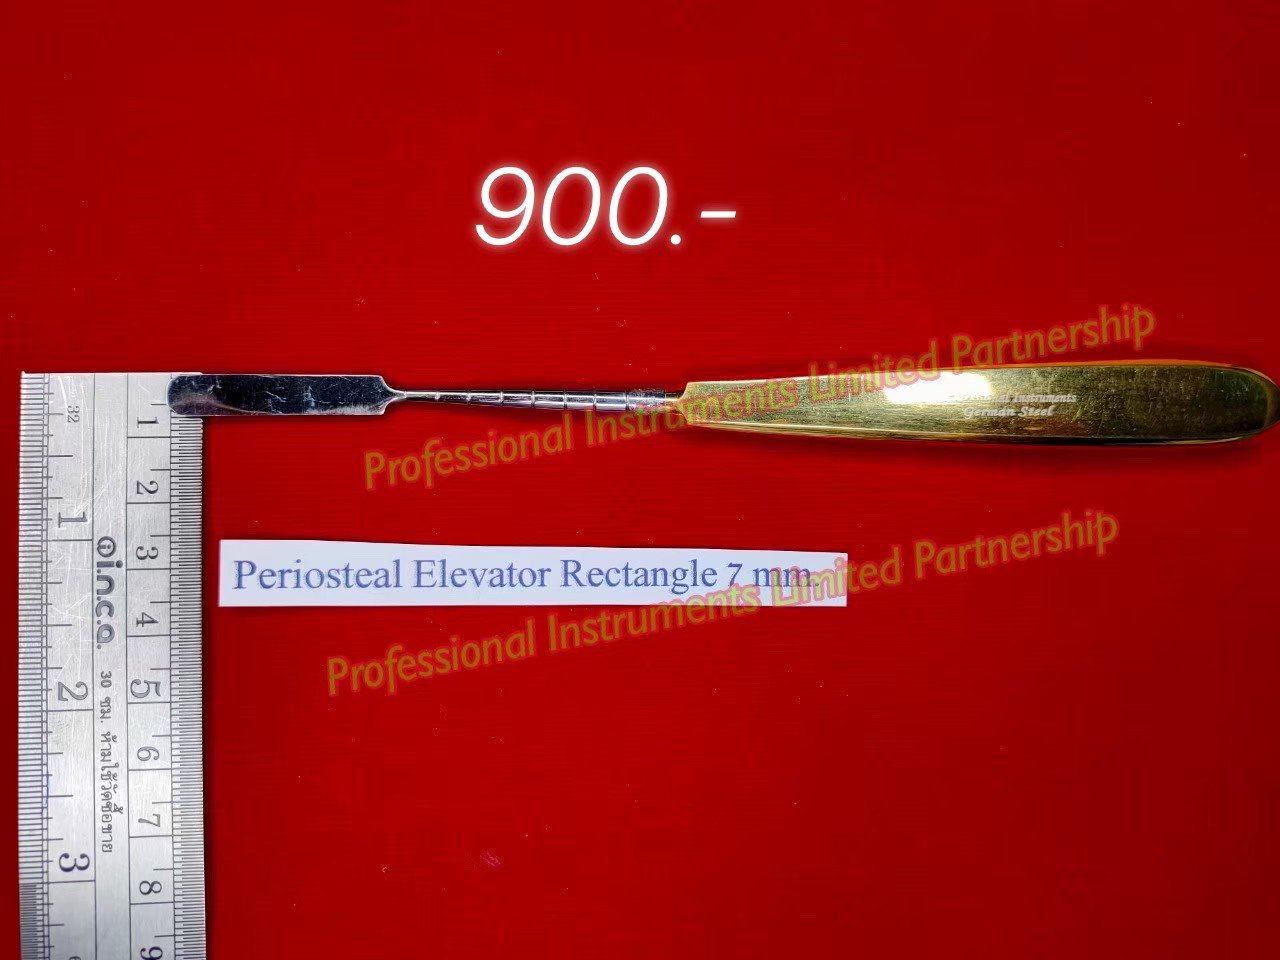 Periosteel Elevator Retractor 7mm-Gold